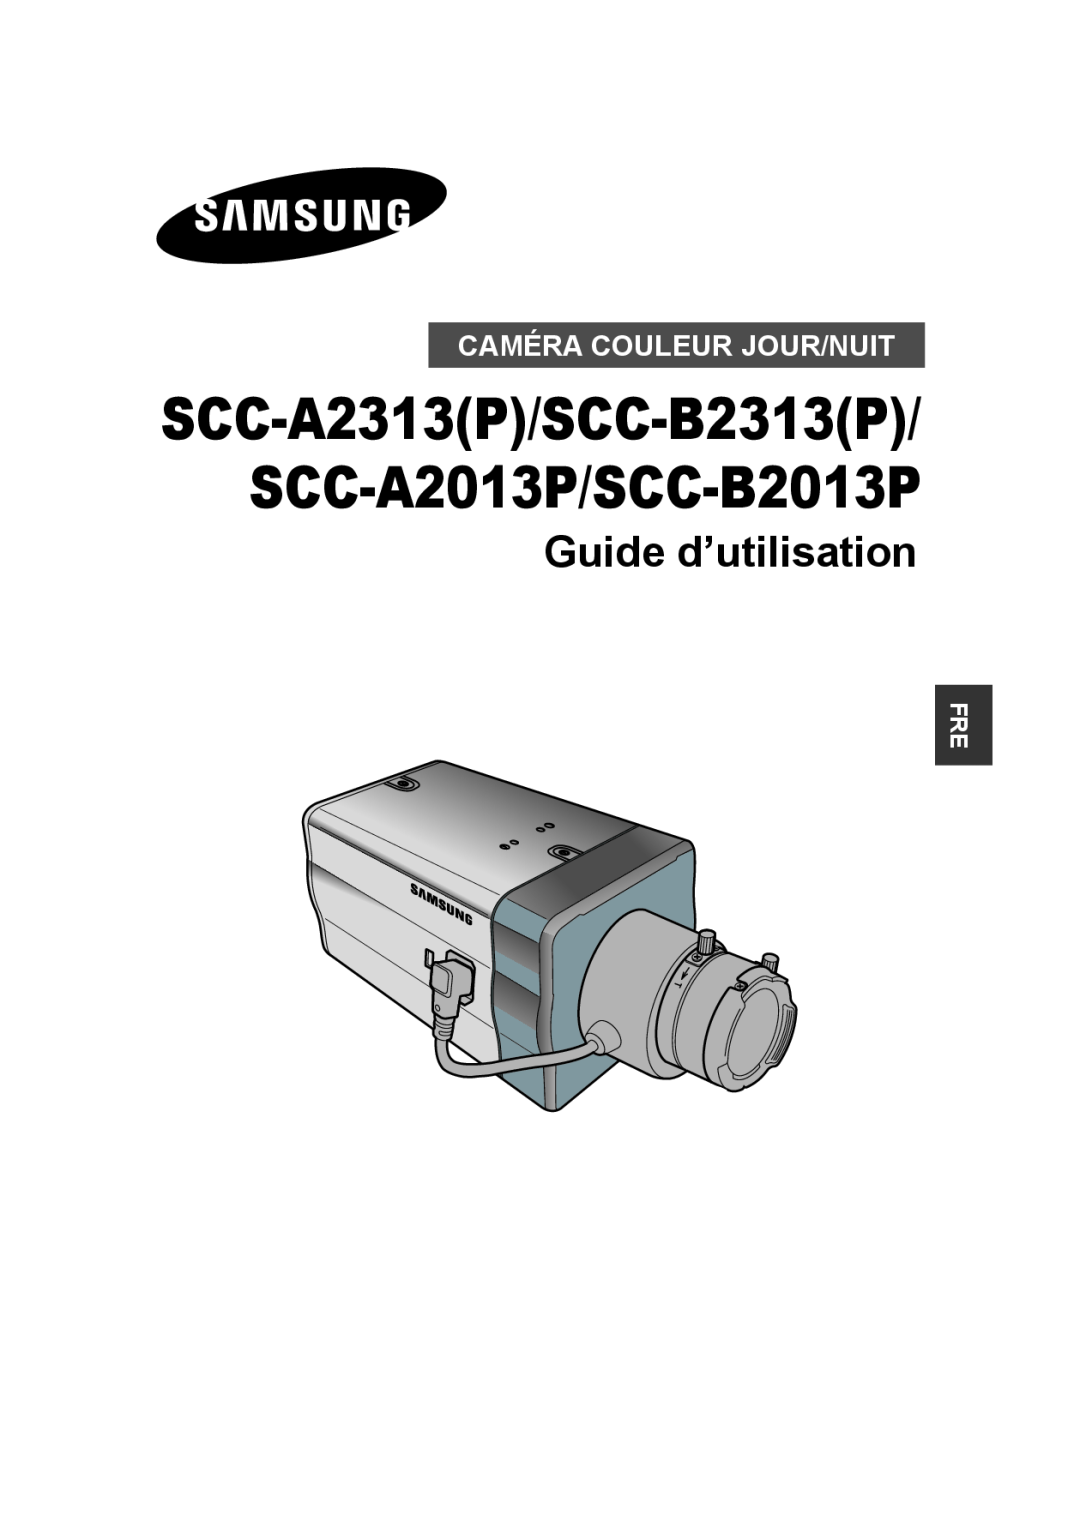 Samsung manual SCC-A2313P/SCC-B2313P/ SCC-A2013P/SCC-B2013P, Guide d’utilisation, Caméra Couleur Jour/Nuit 